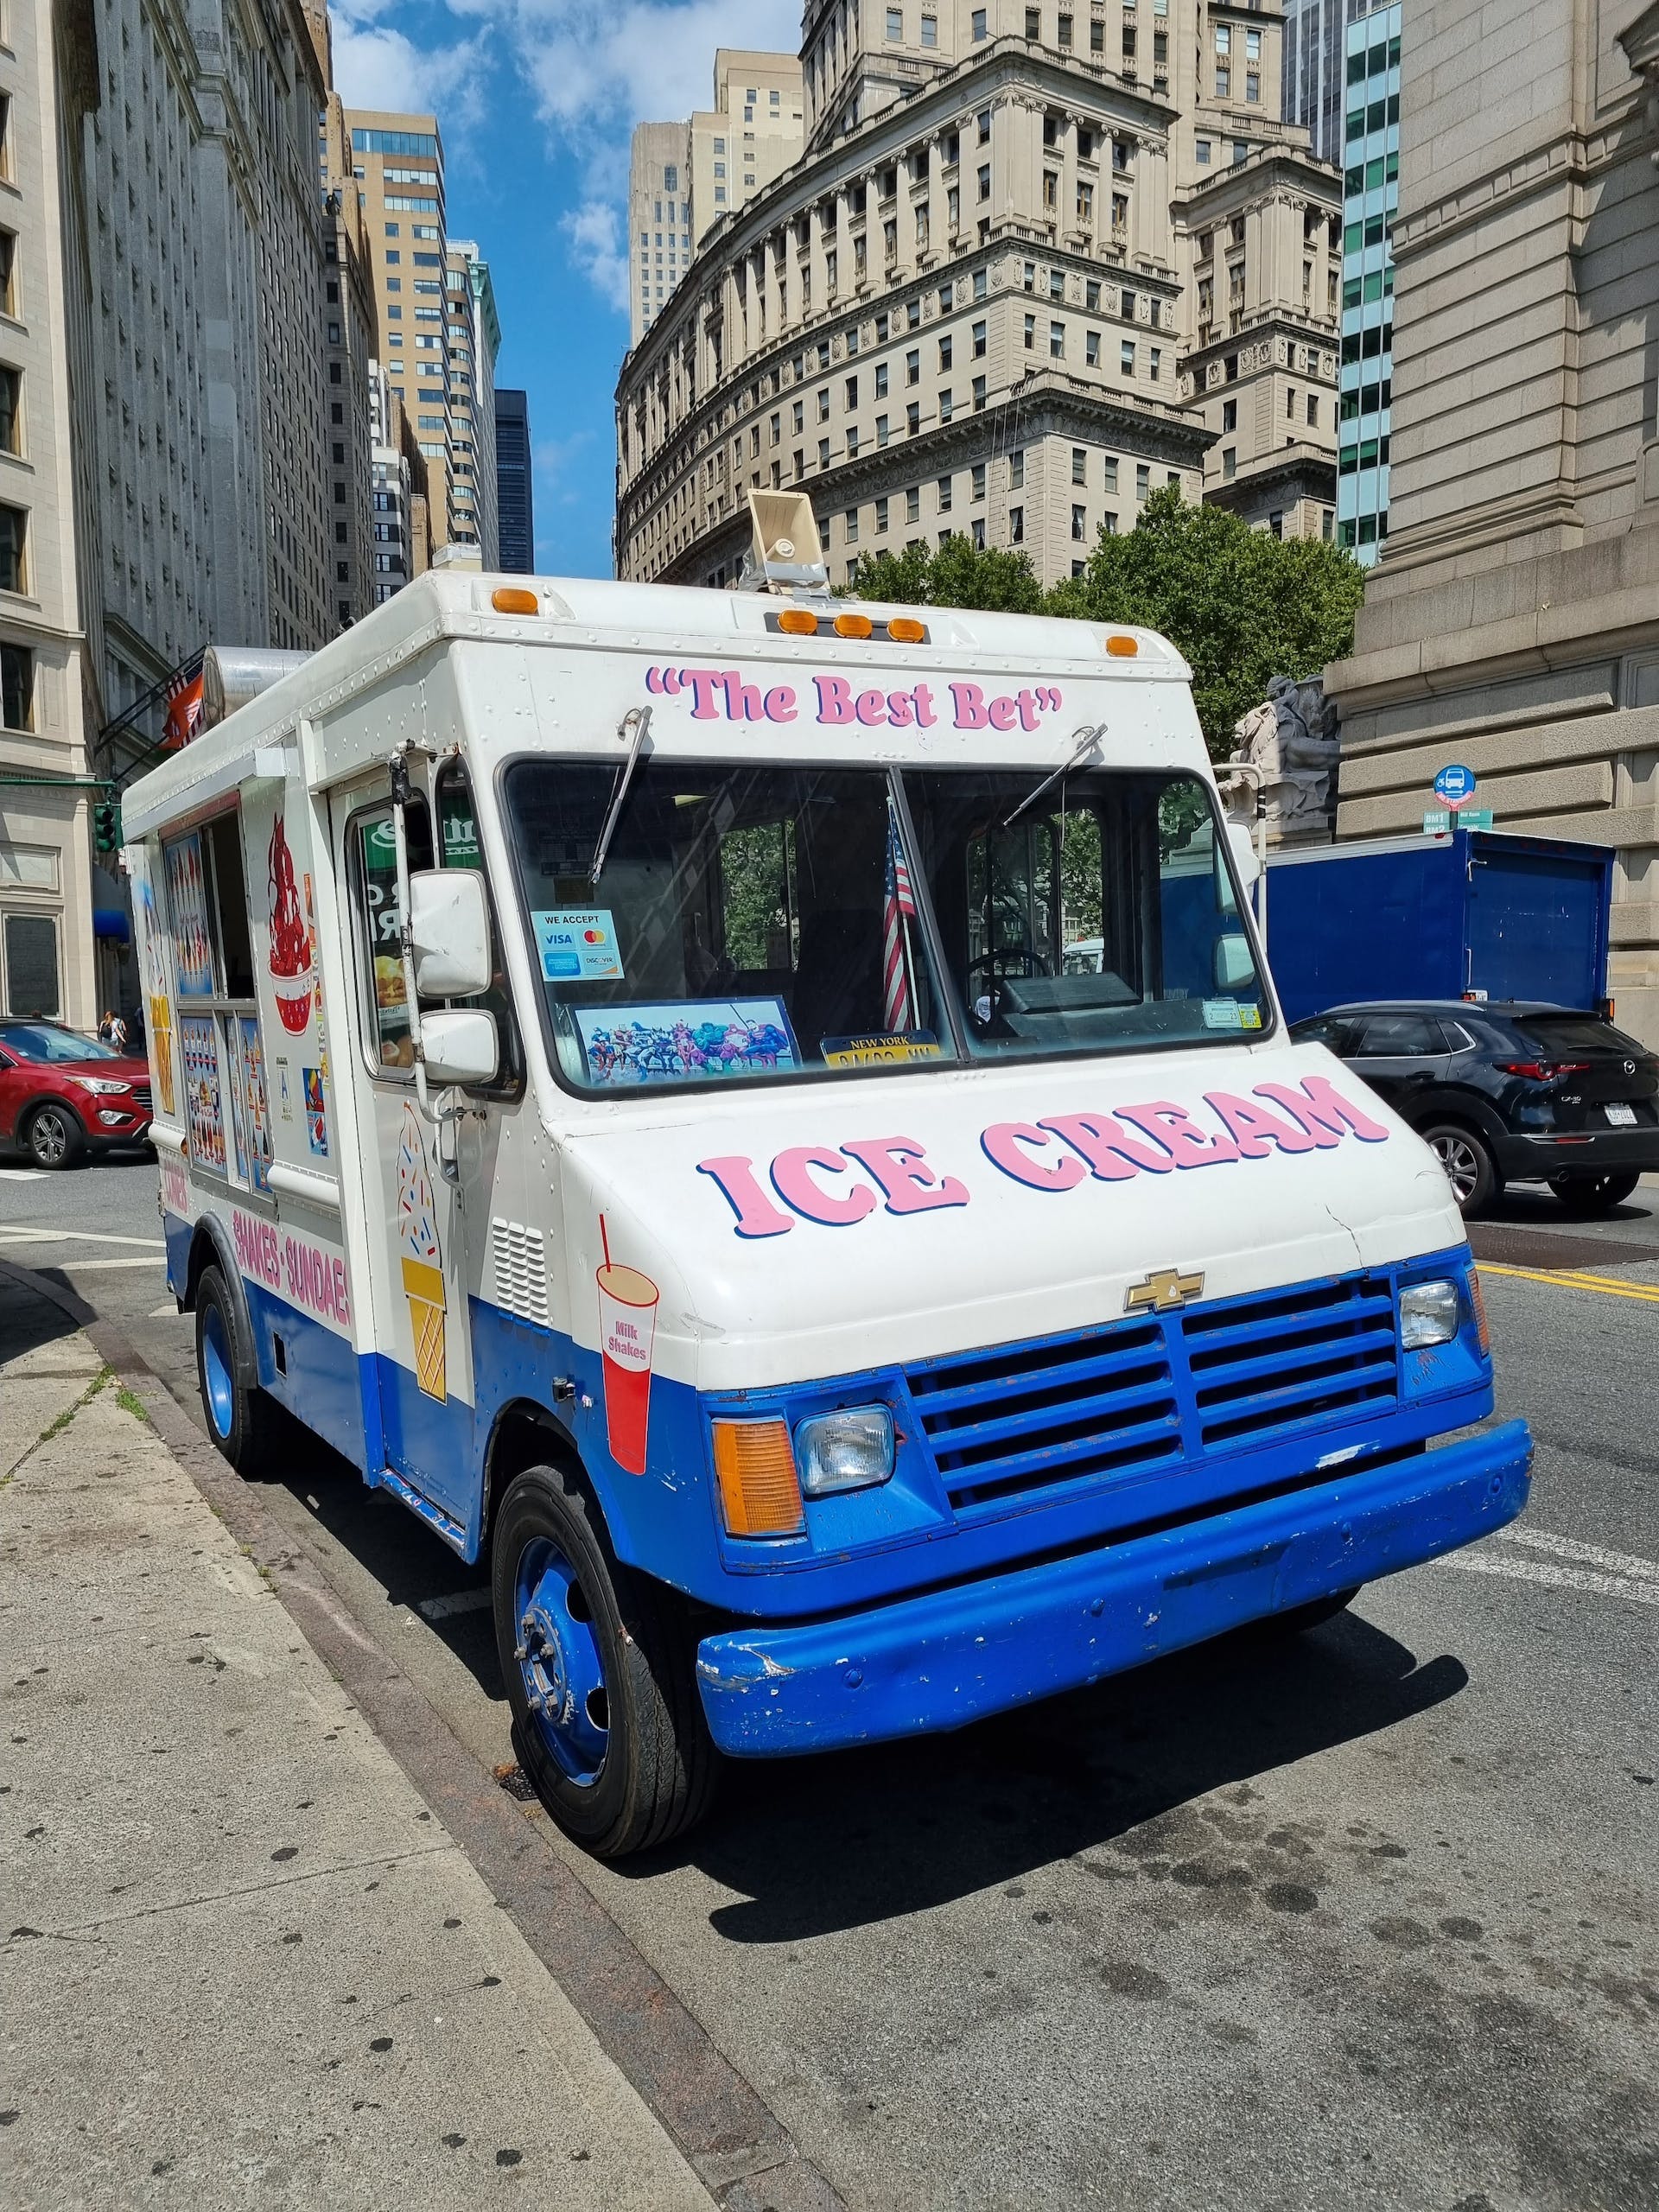 An ice-cream van | Source: Pexels